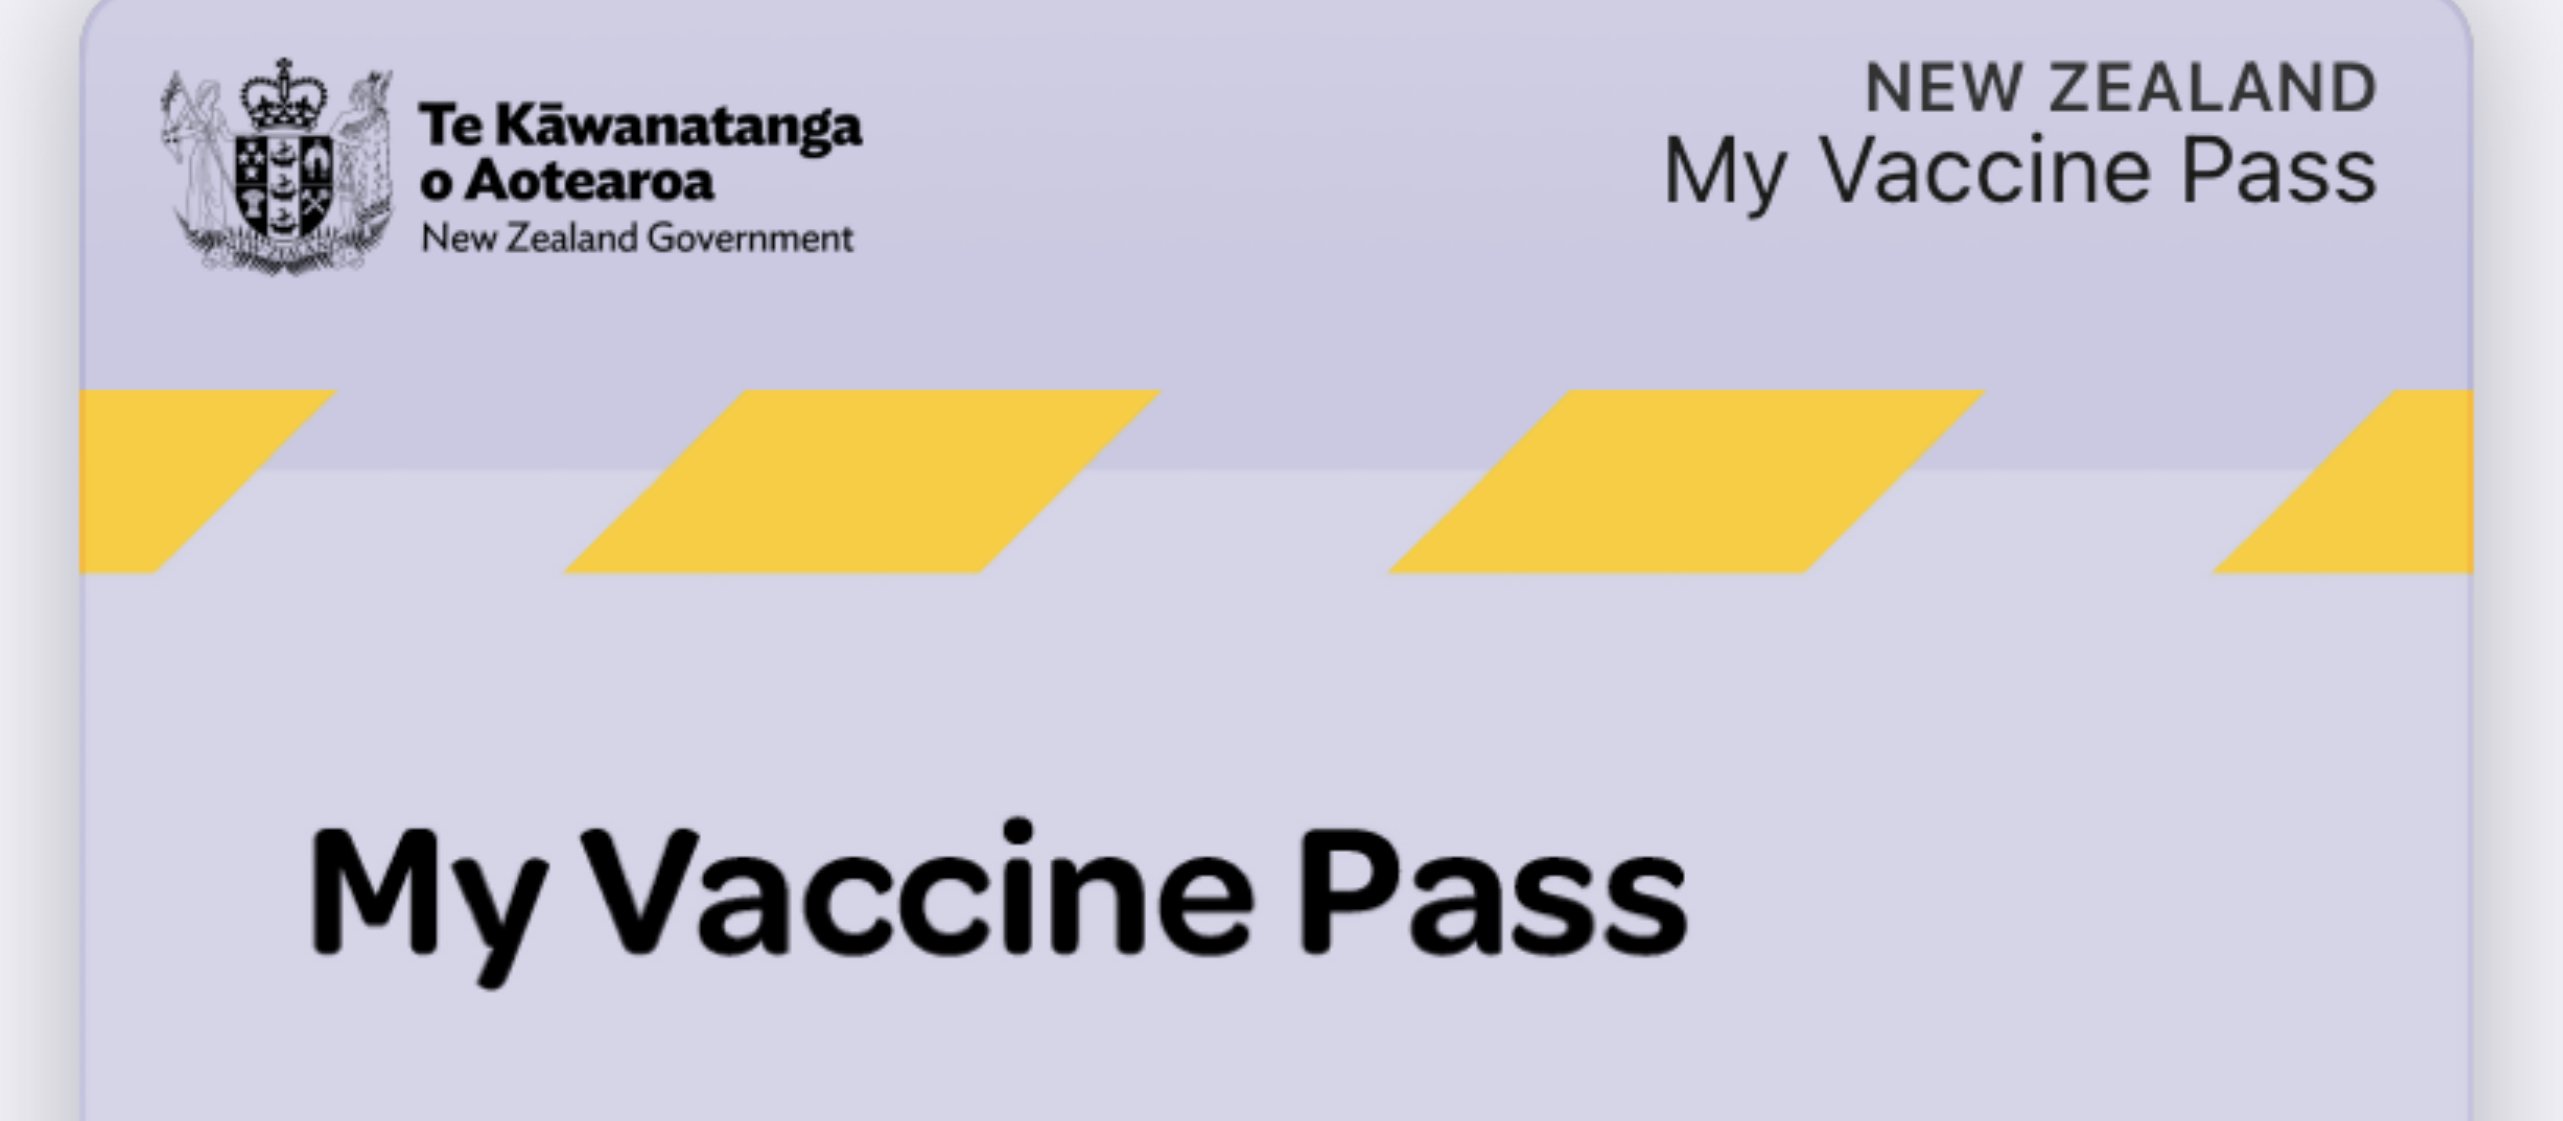 My vaccine pass 